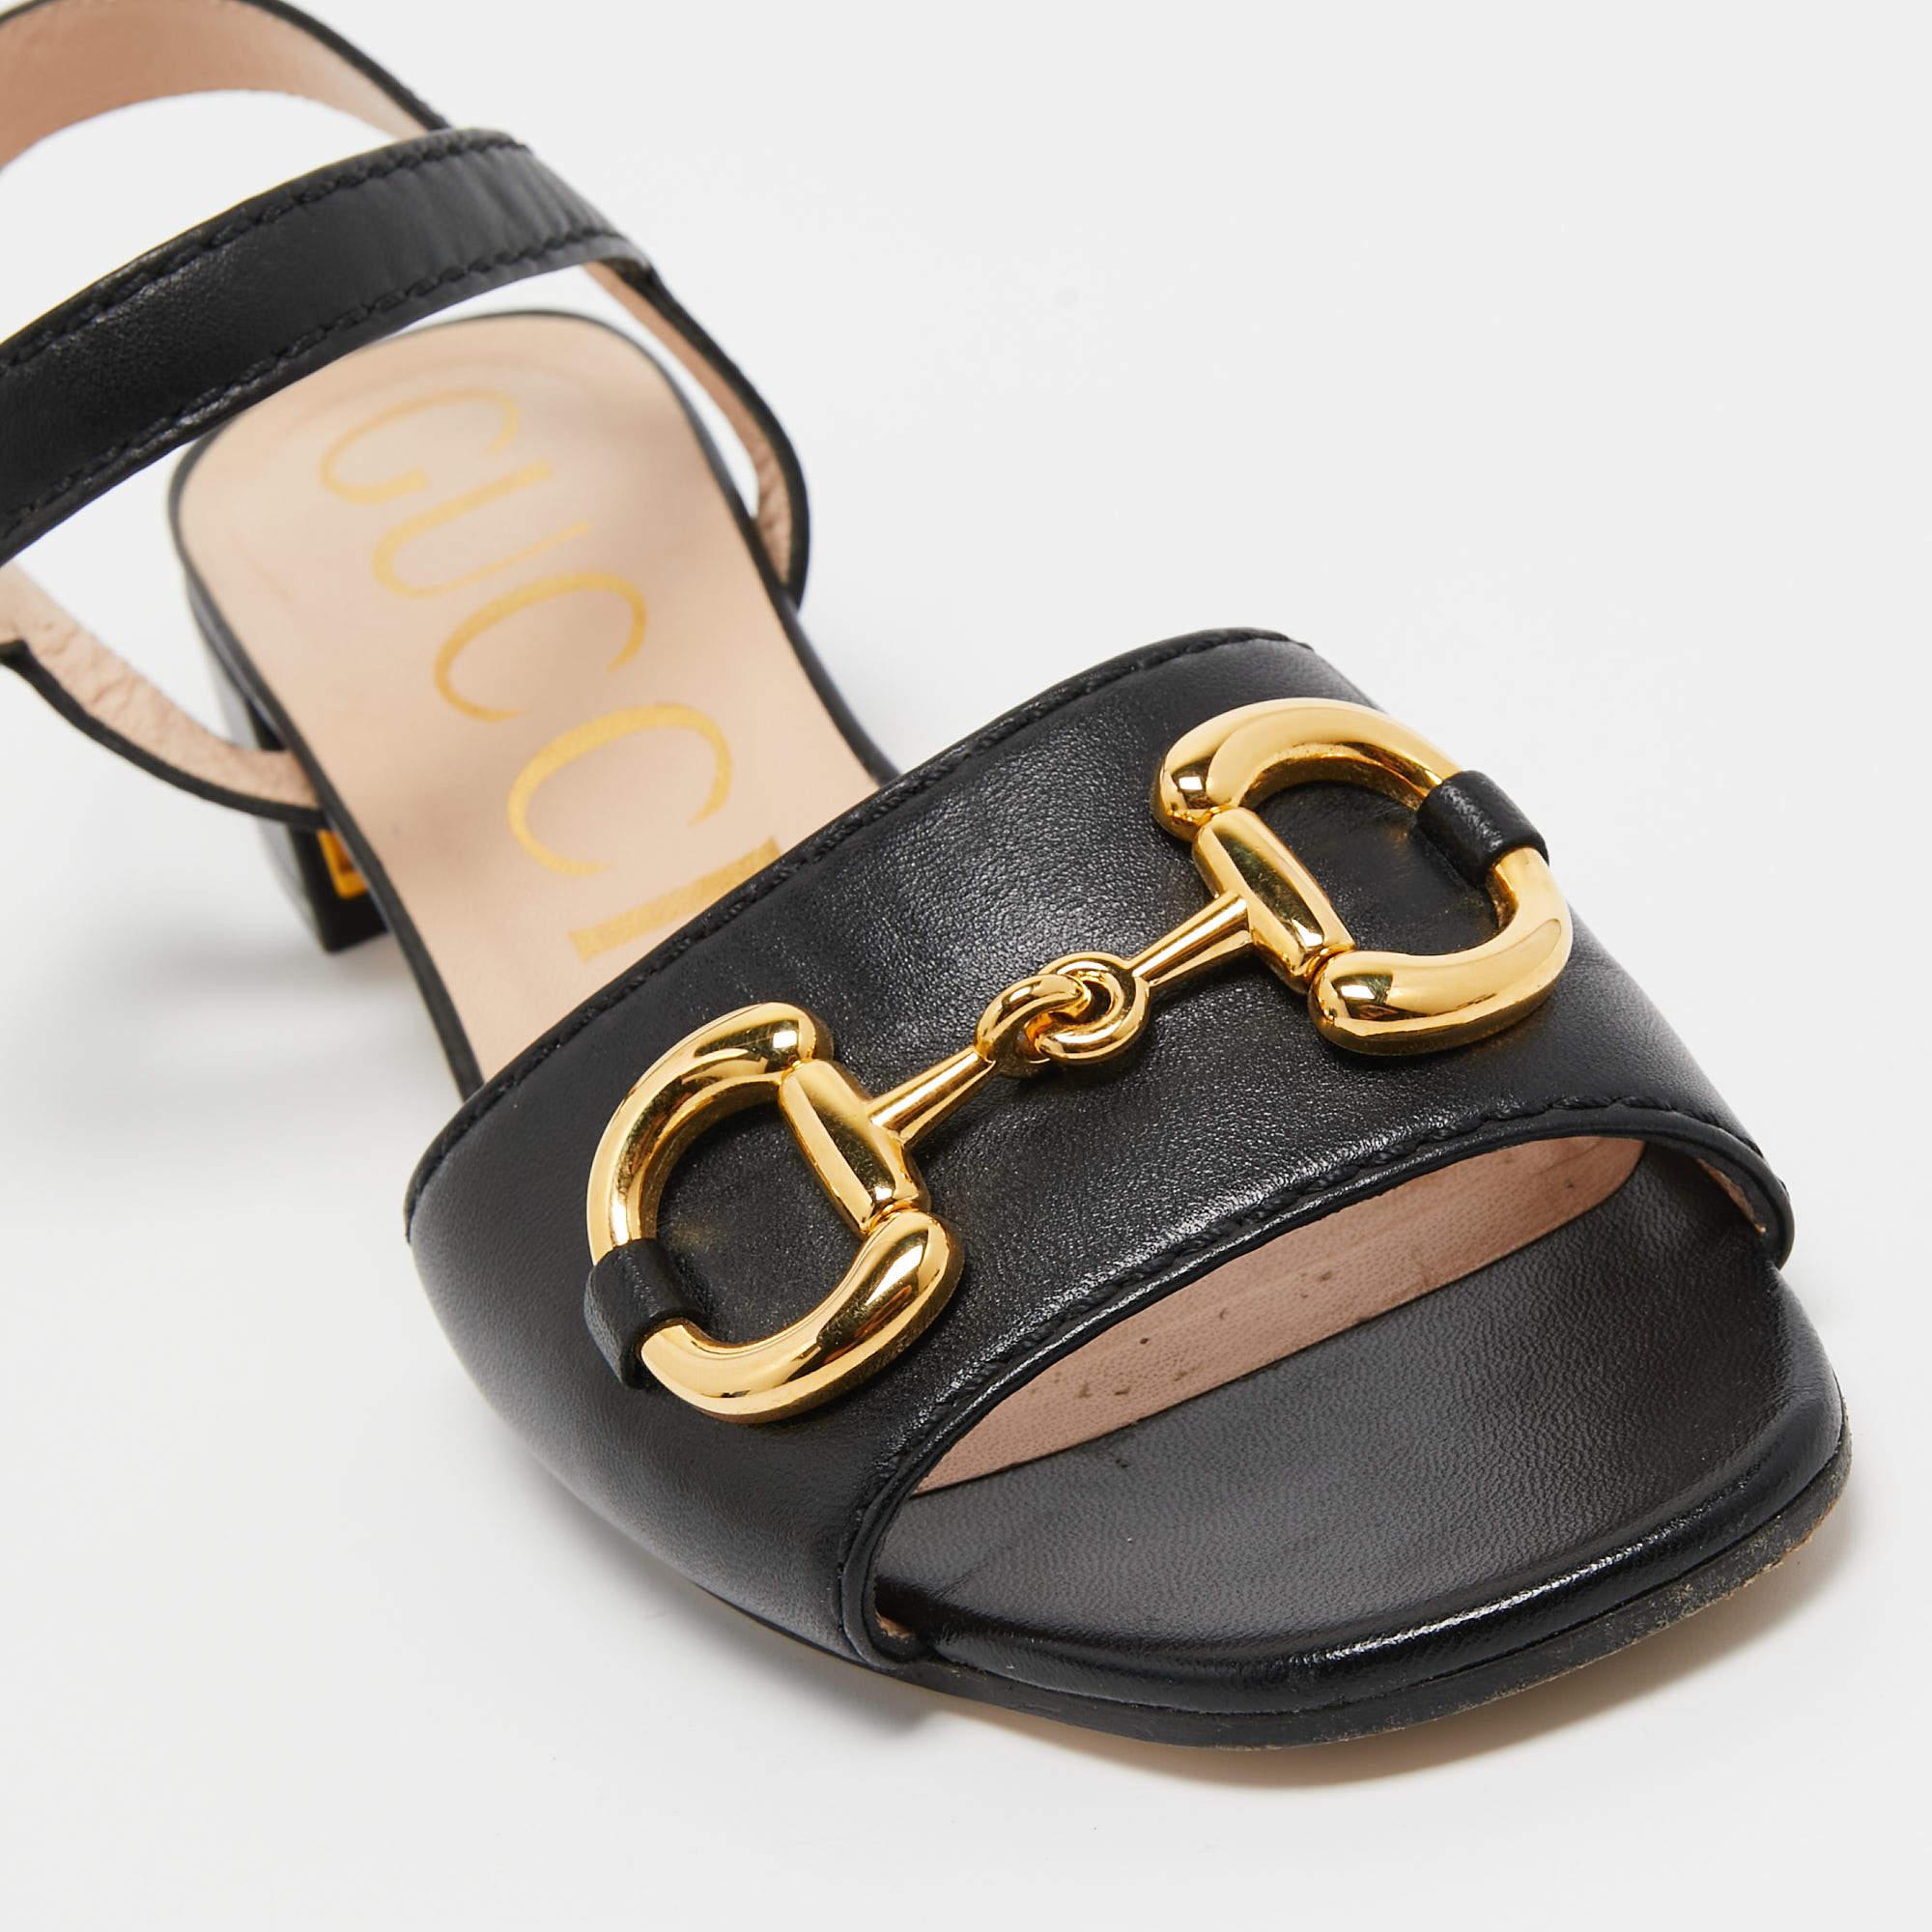 Gucci Black Leather Horsebit Sandals Size 36.5 2